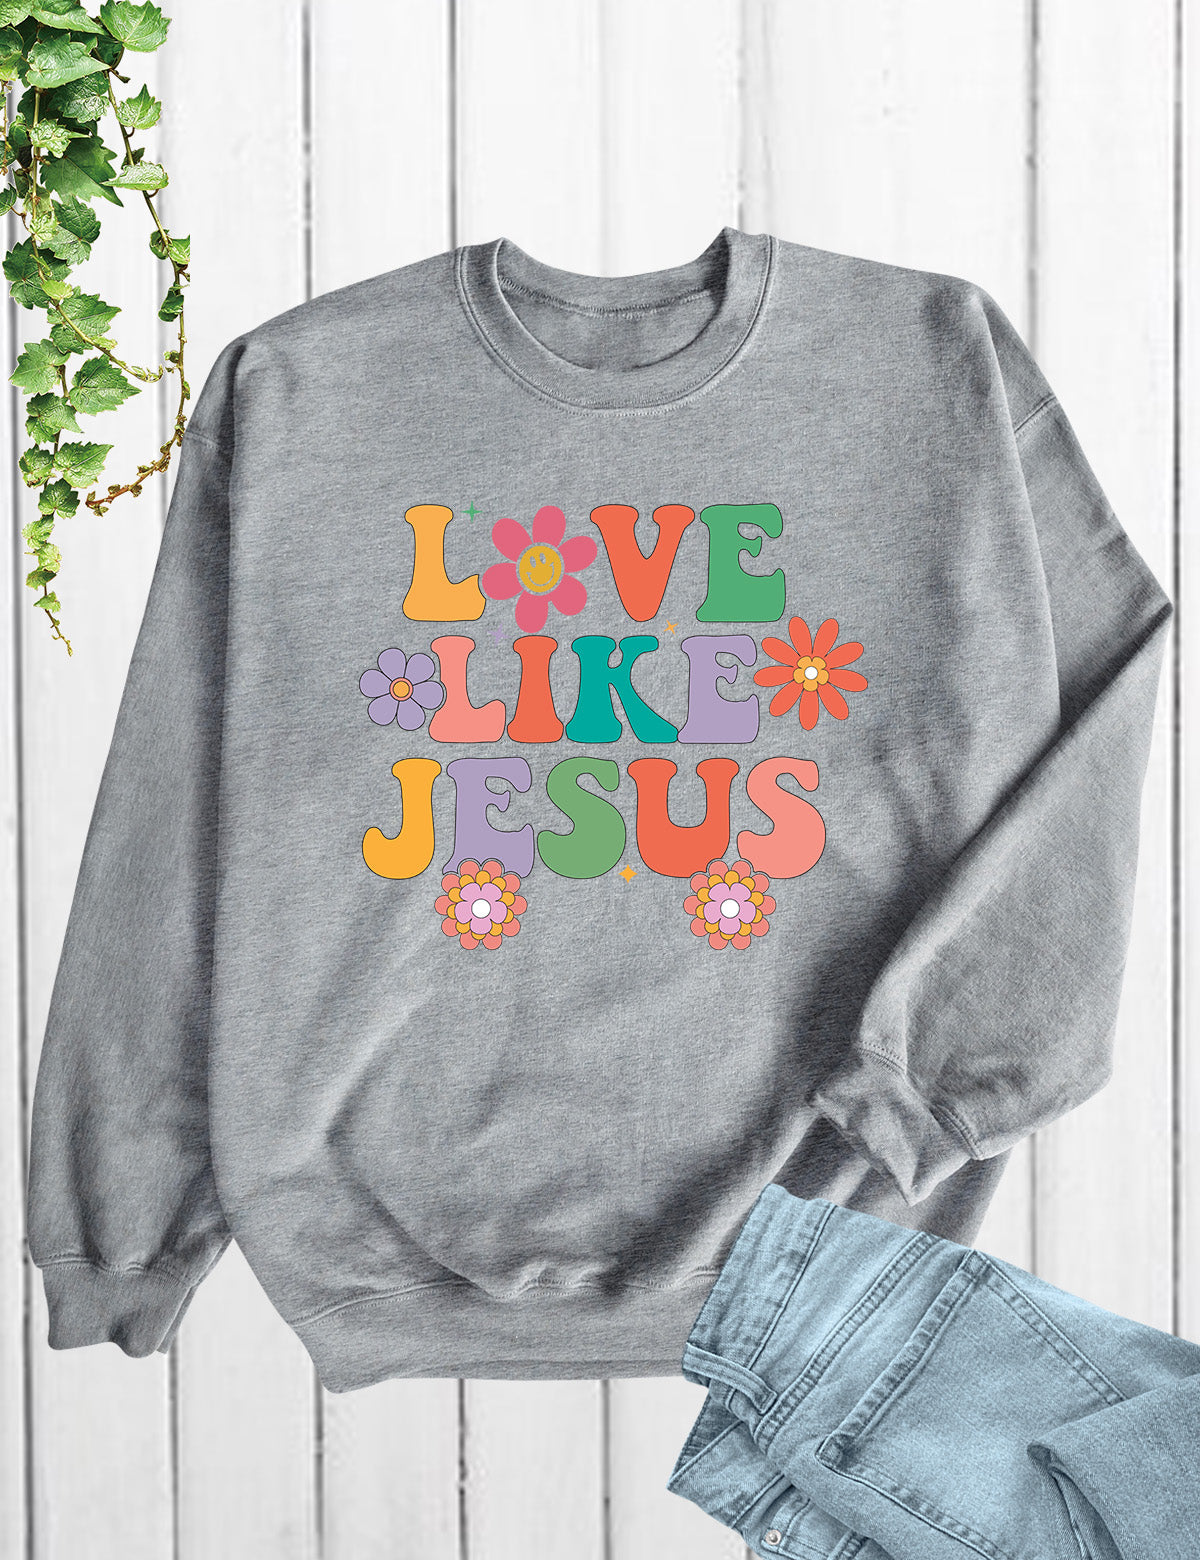 Love Like Jesus Sweatshirt Dear Person Behind Me